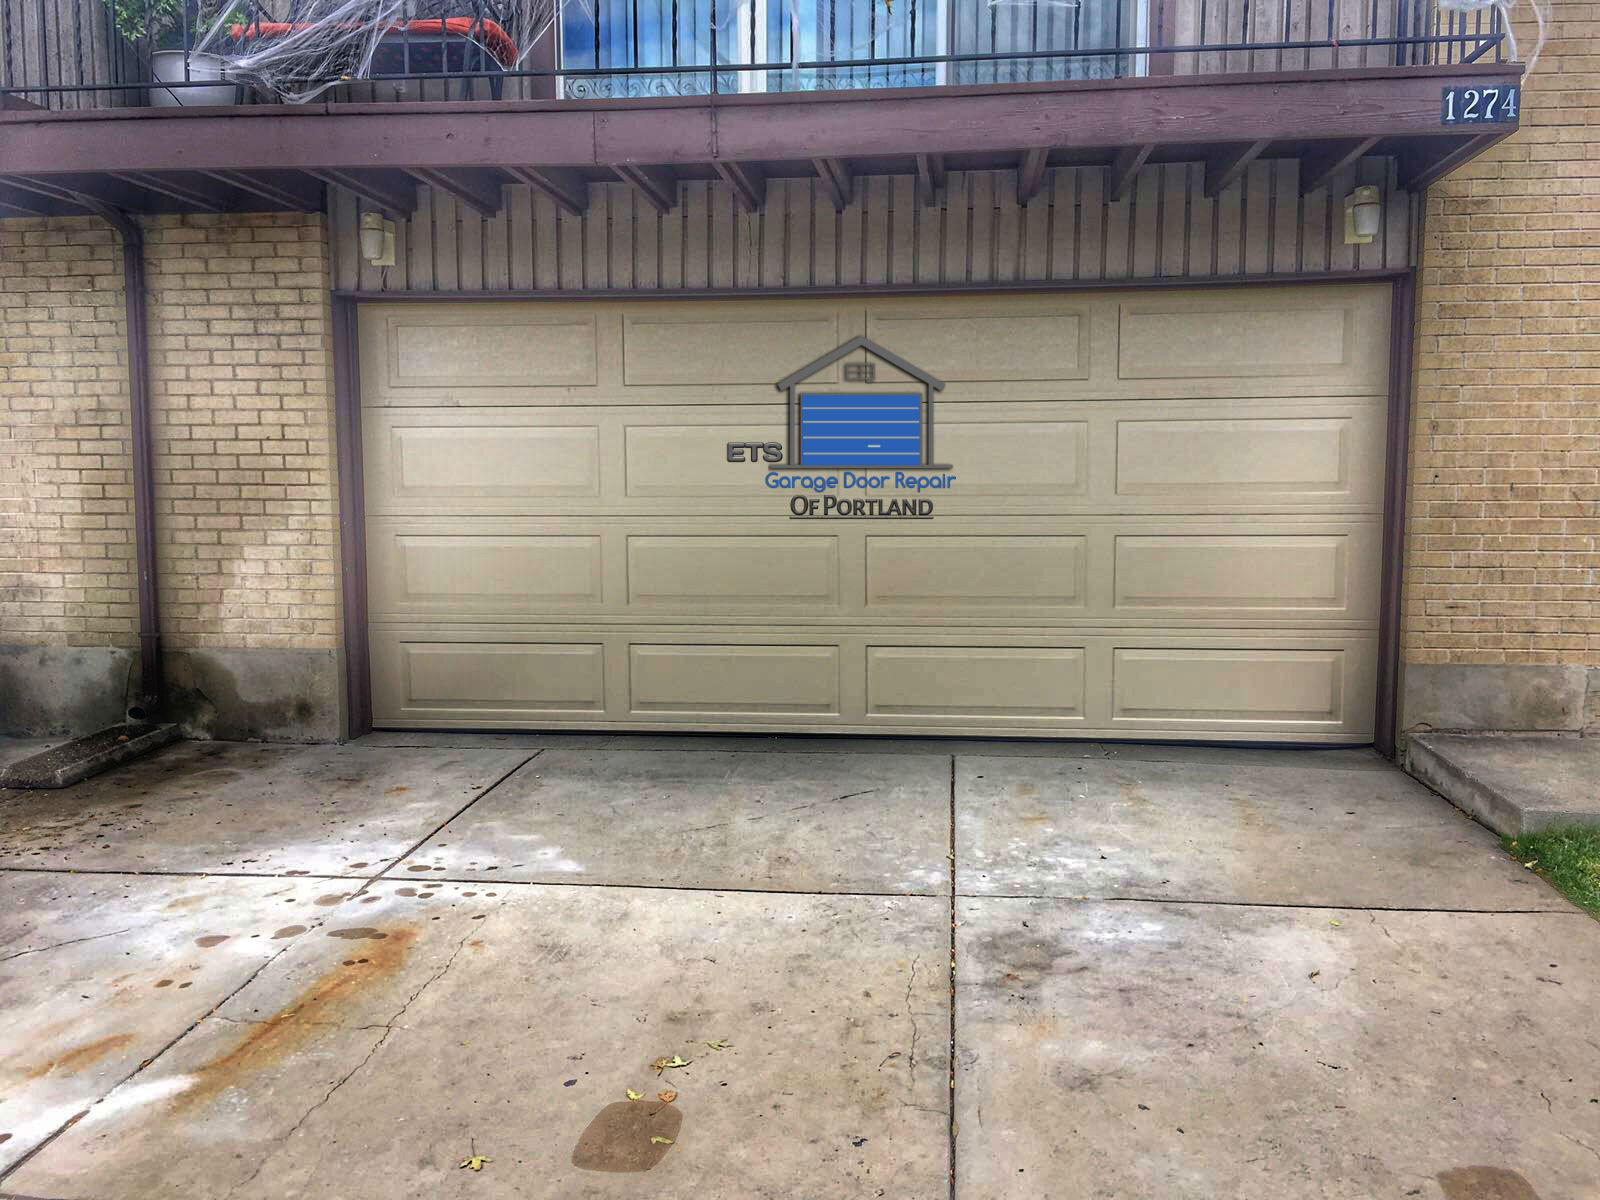 ETS Garage Door Repair Of Clackmas - Garage Door Repair & Installation Services18